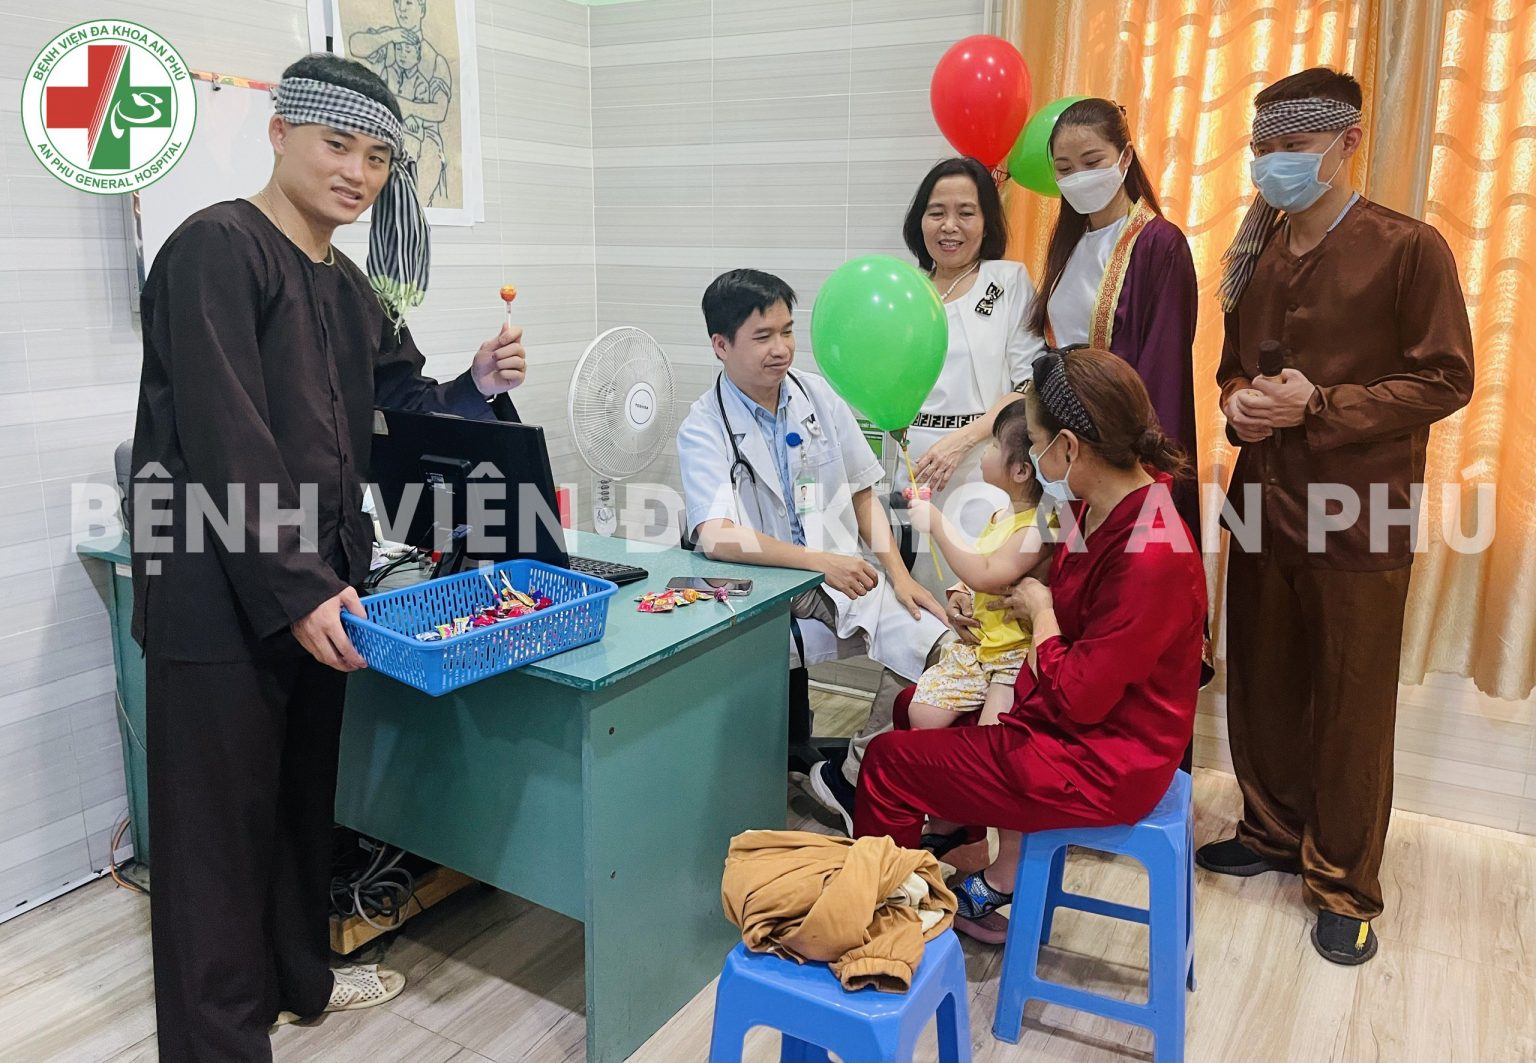 Thạc sĩ, Bác sĩ Hứu Thanh Vương cùng “chú Cuội – chị Hằng” tặng quà cho các cháu thiếu nhi khi đang khám bệnh tại khoa Nhi – BVĐK An Phú